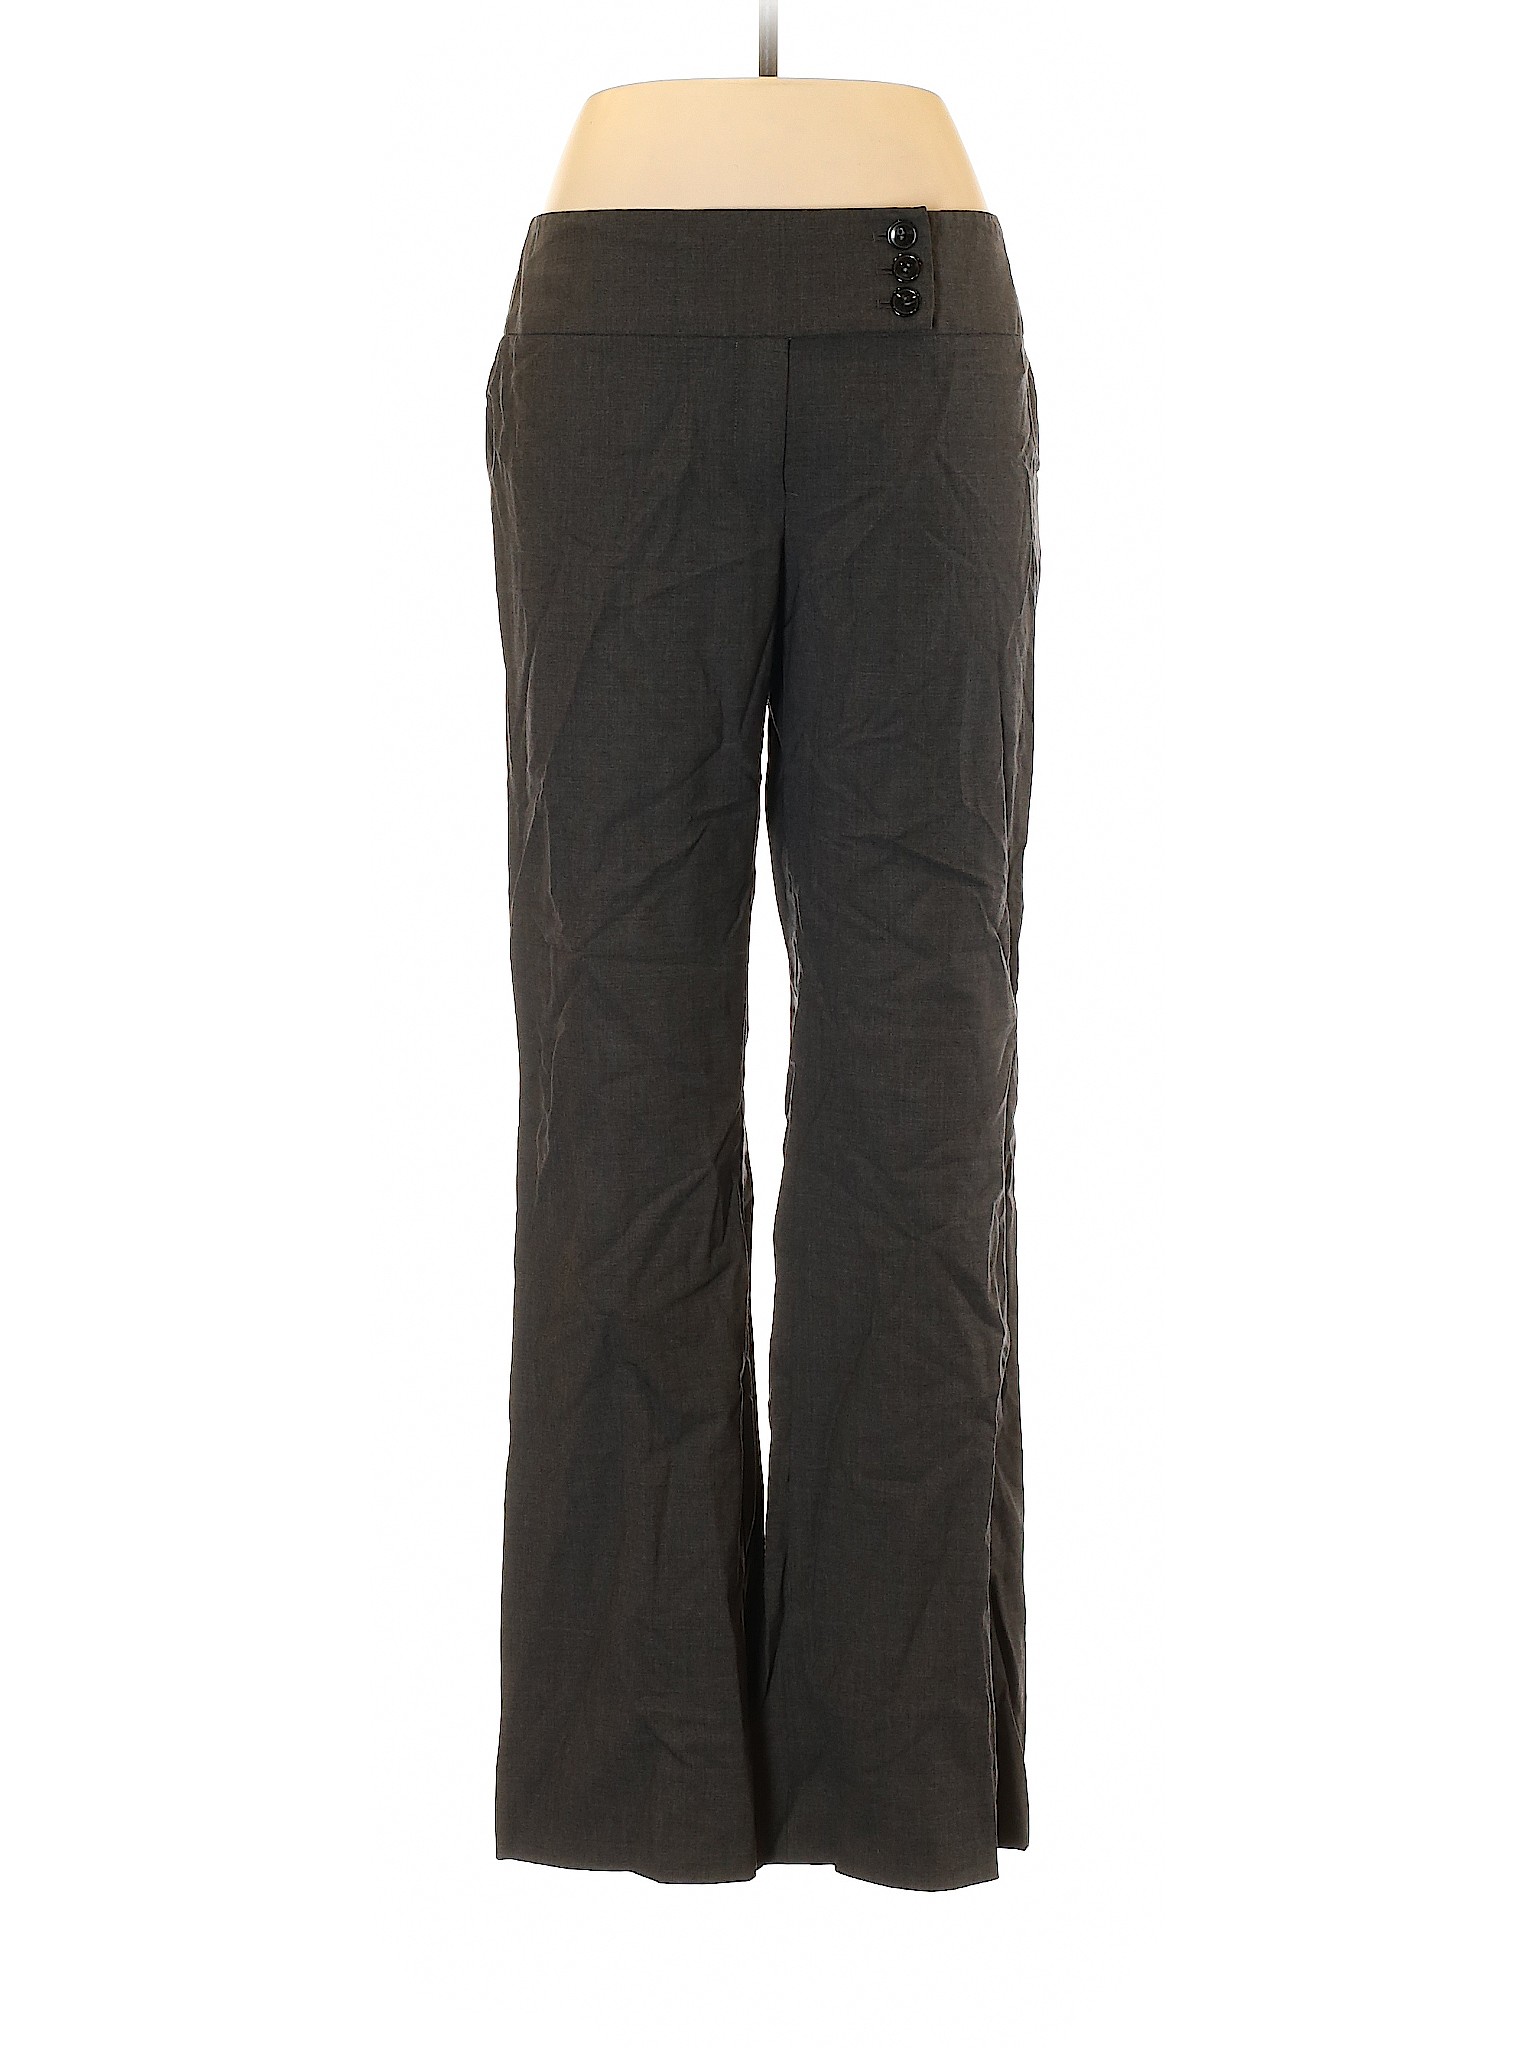 Classiques Entier Women Gray Wool Pants 10 | eBay